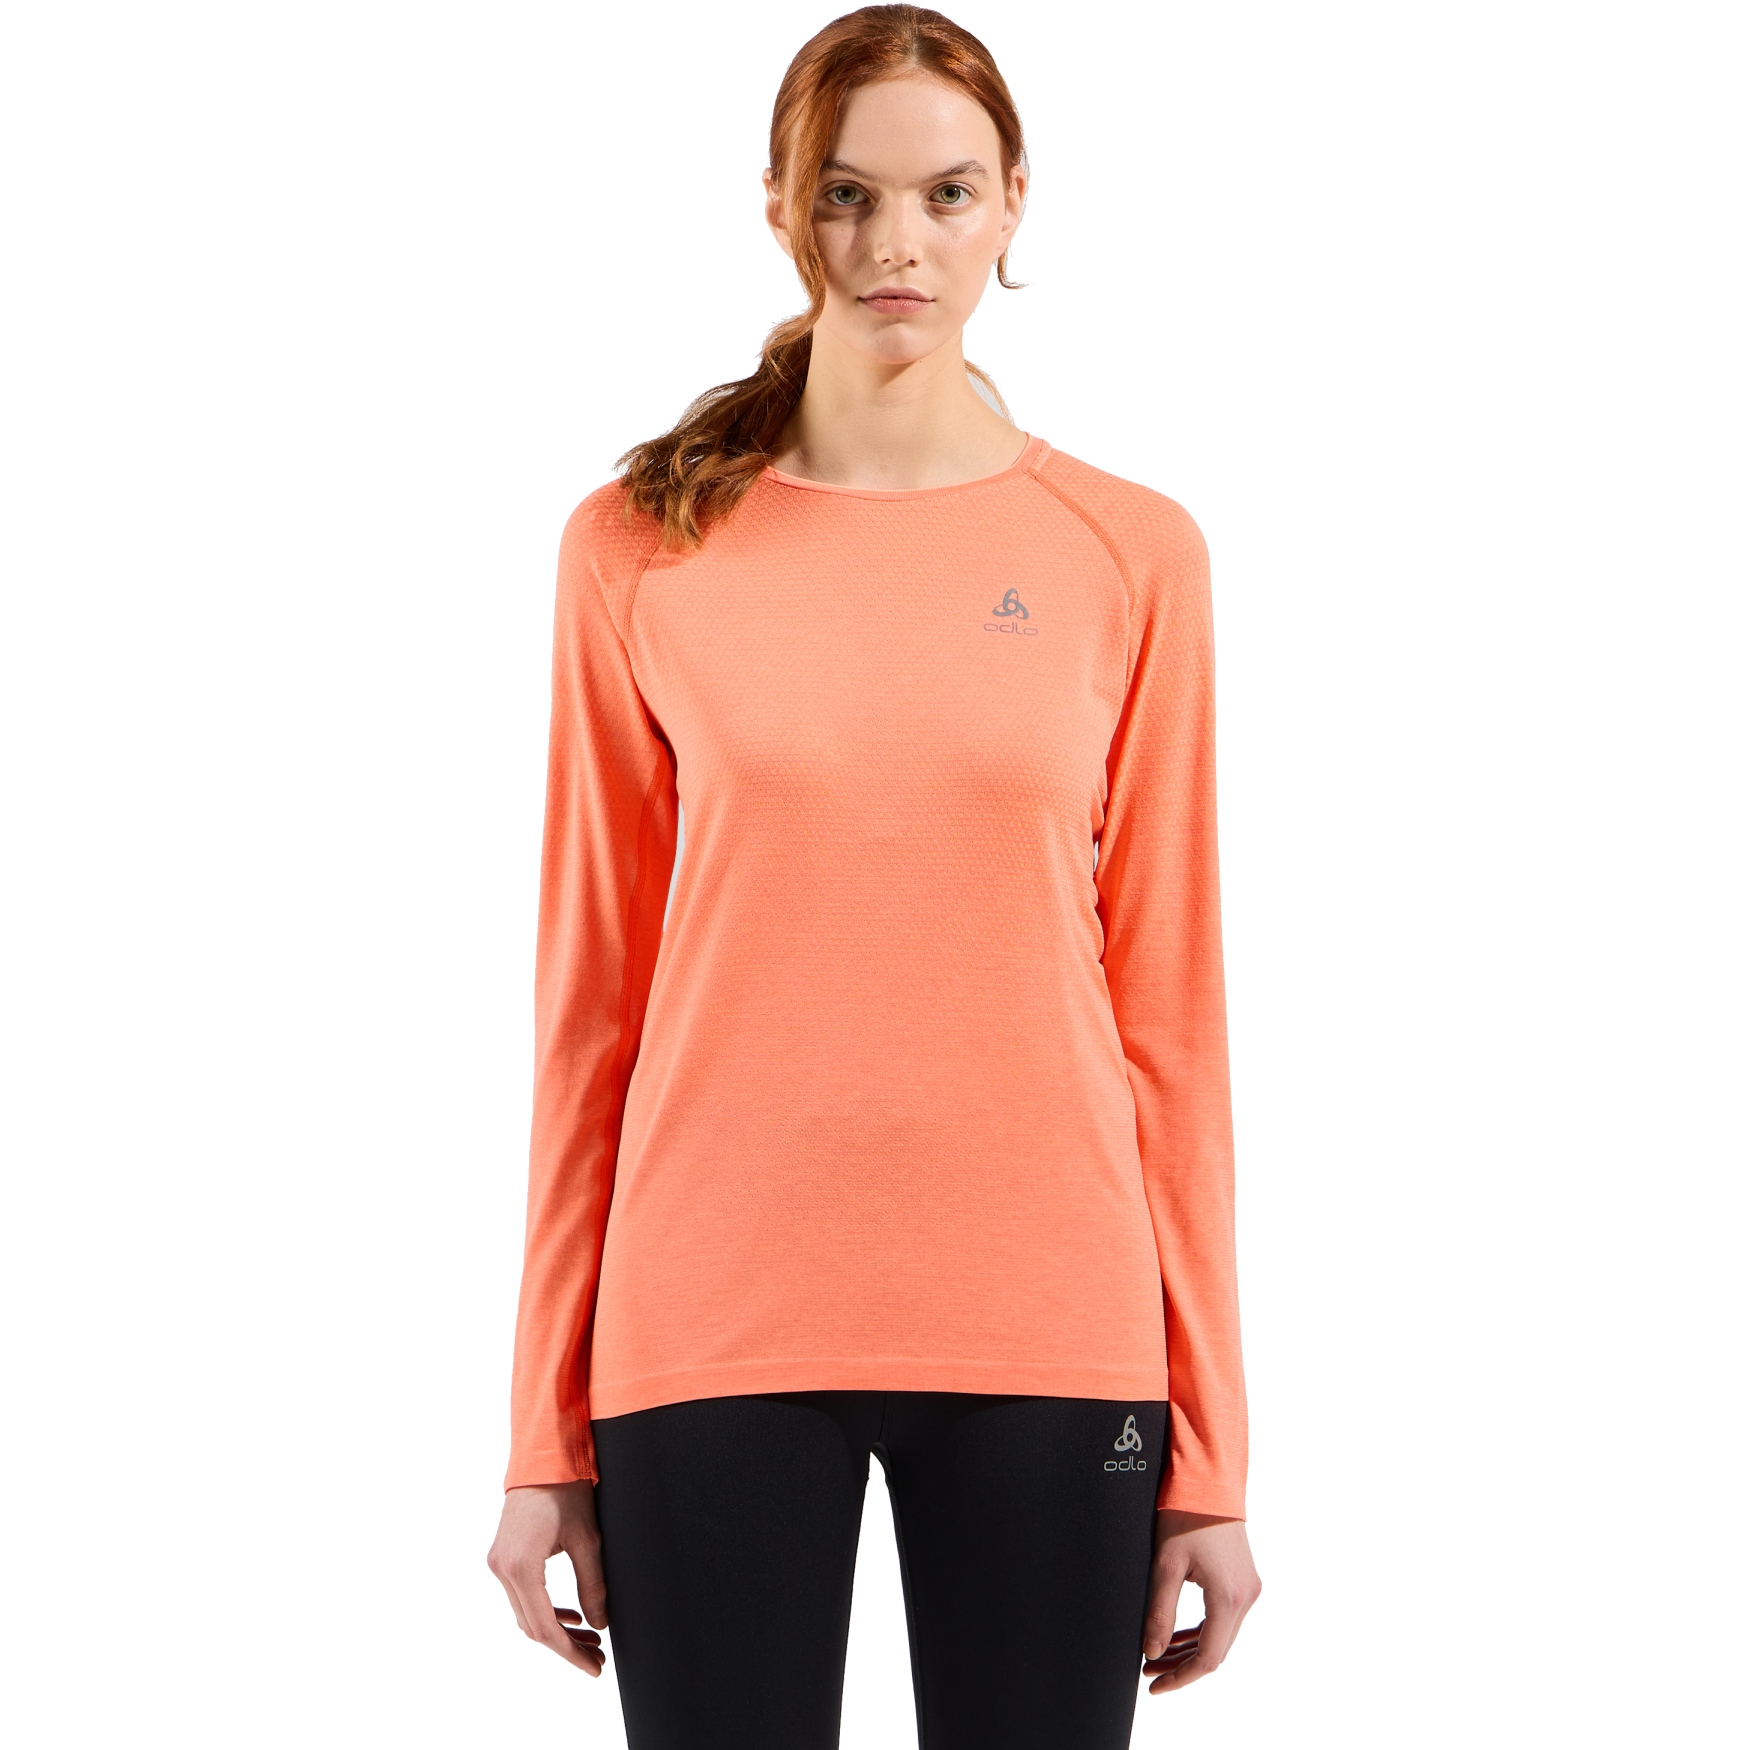 Odlo Essentials Seamless Long Sleeve Running T-Shirt Women - aqua